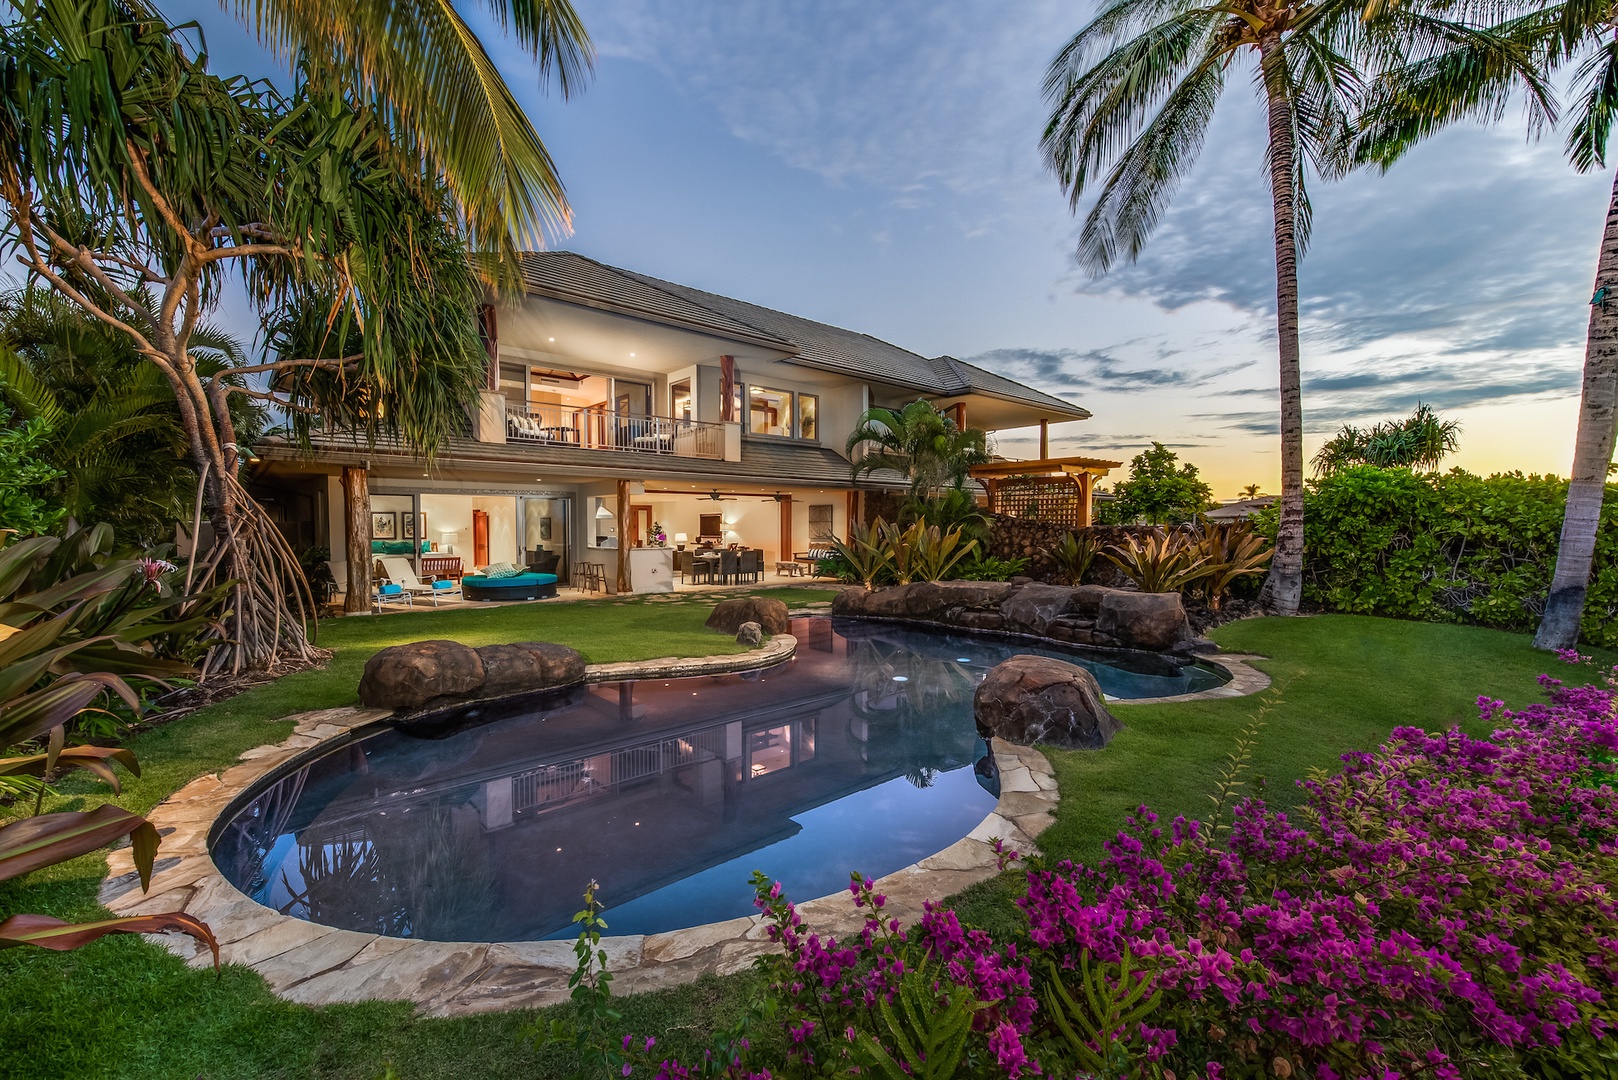 Kamuela Vacation Rentals, 3BD Ke Kailani (1C) at Mauna Lani Resort - Your Lush & Private Tropical Oasis Awaits!